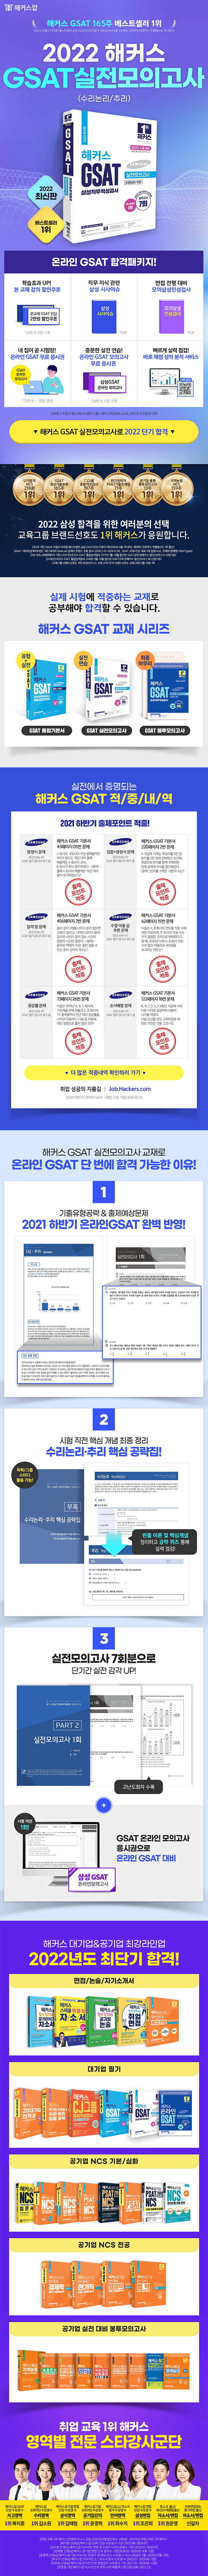 2022 해커스 GSAT 삼성직무적성검사 실전모의고사 도서 상세이미지